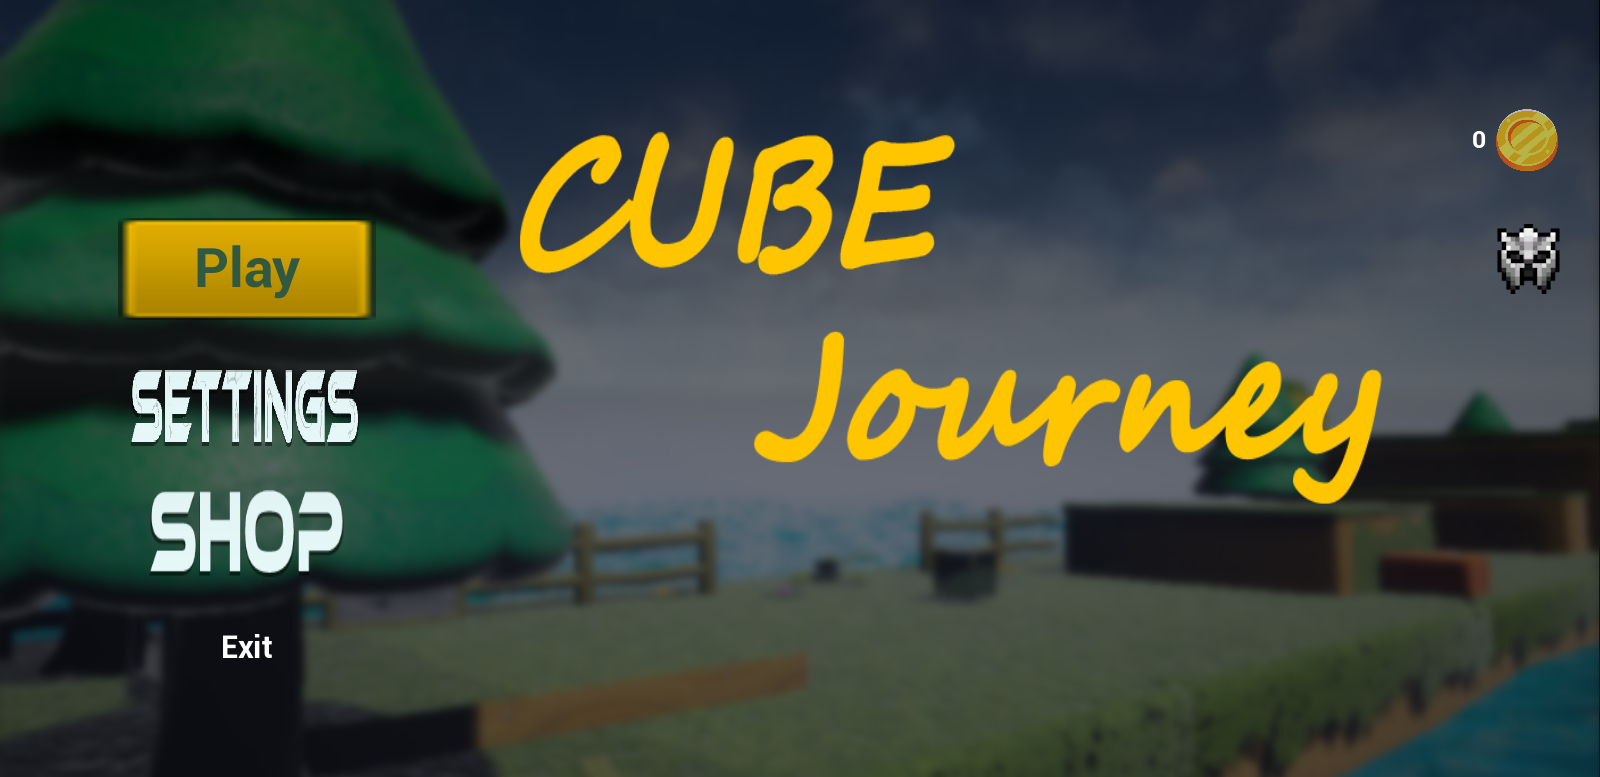 Cube Journey